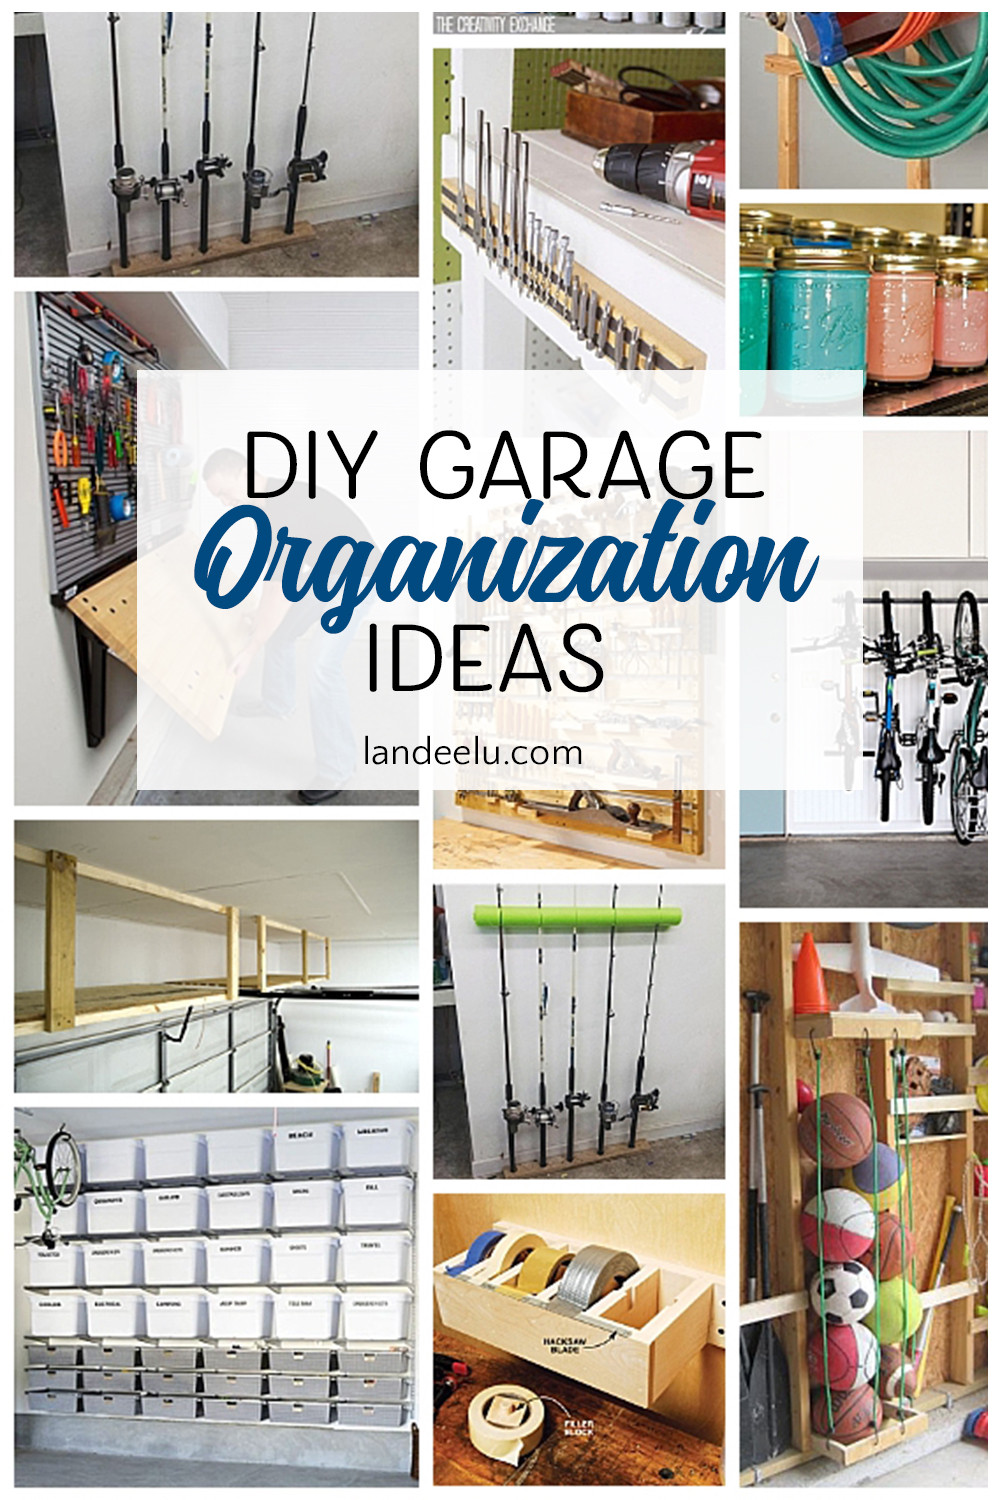 Organizing Garage Ideas
 Awesome DIY Garage Organization Ideas landeelu